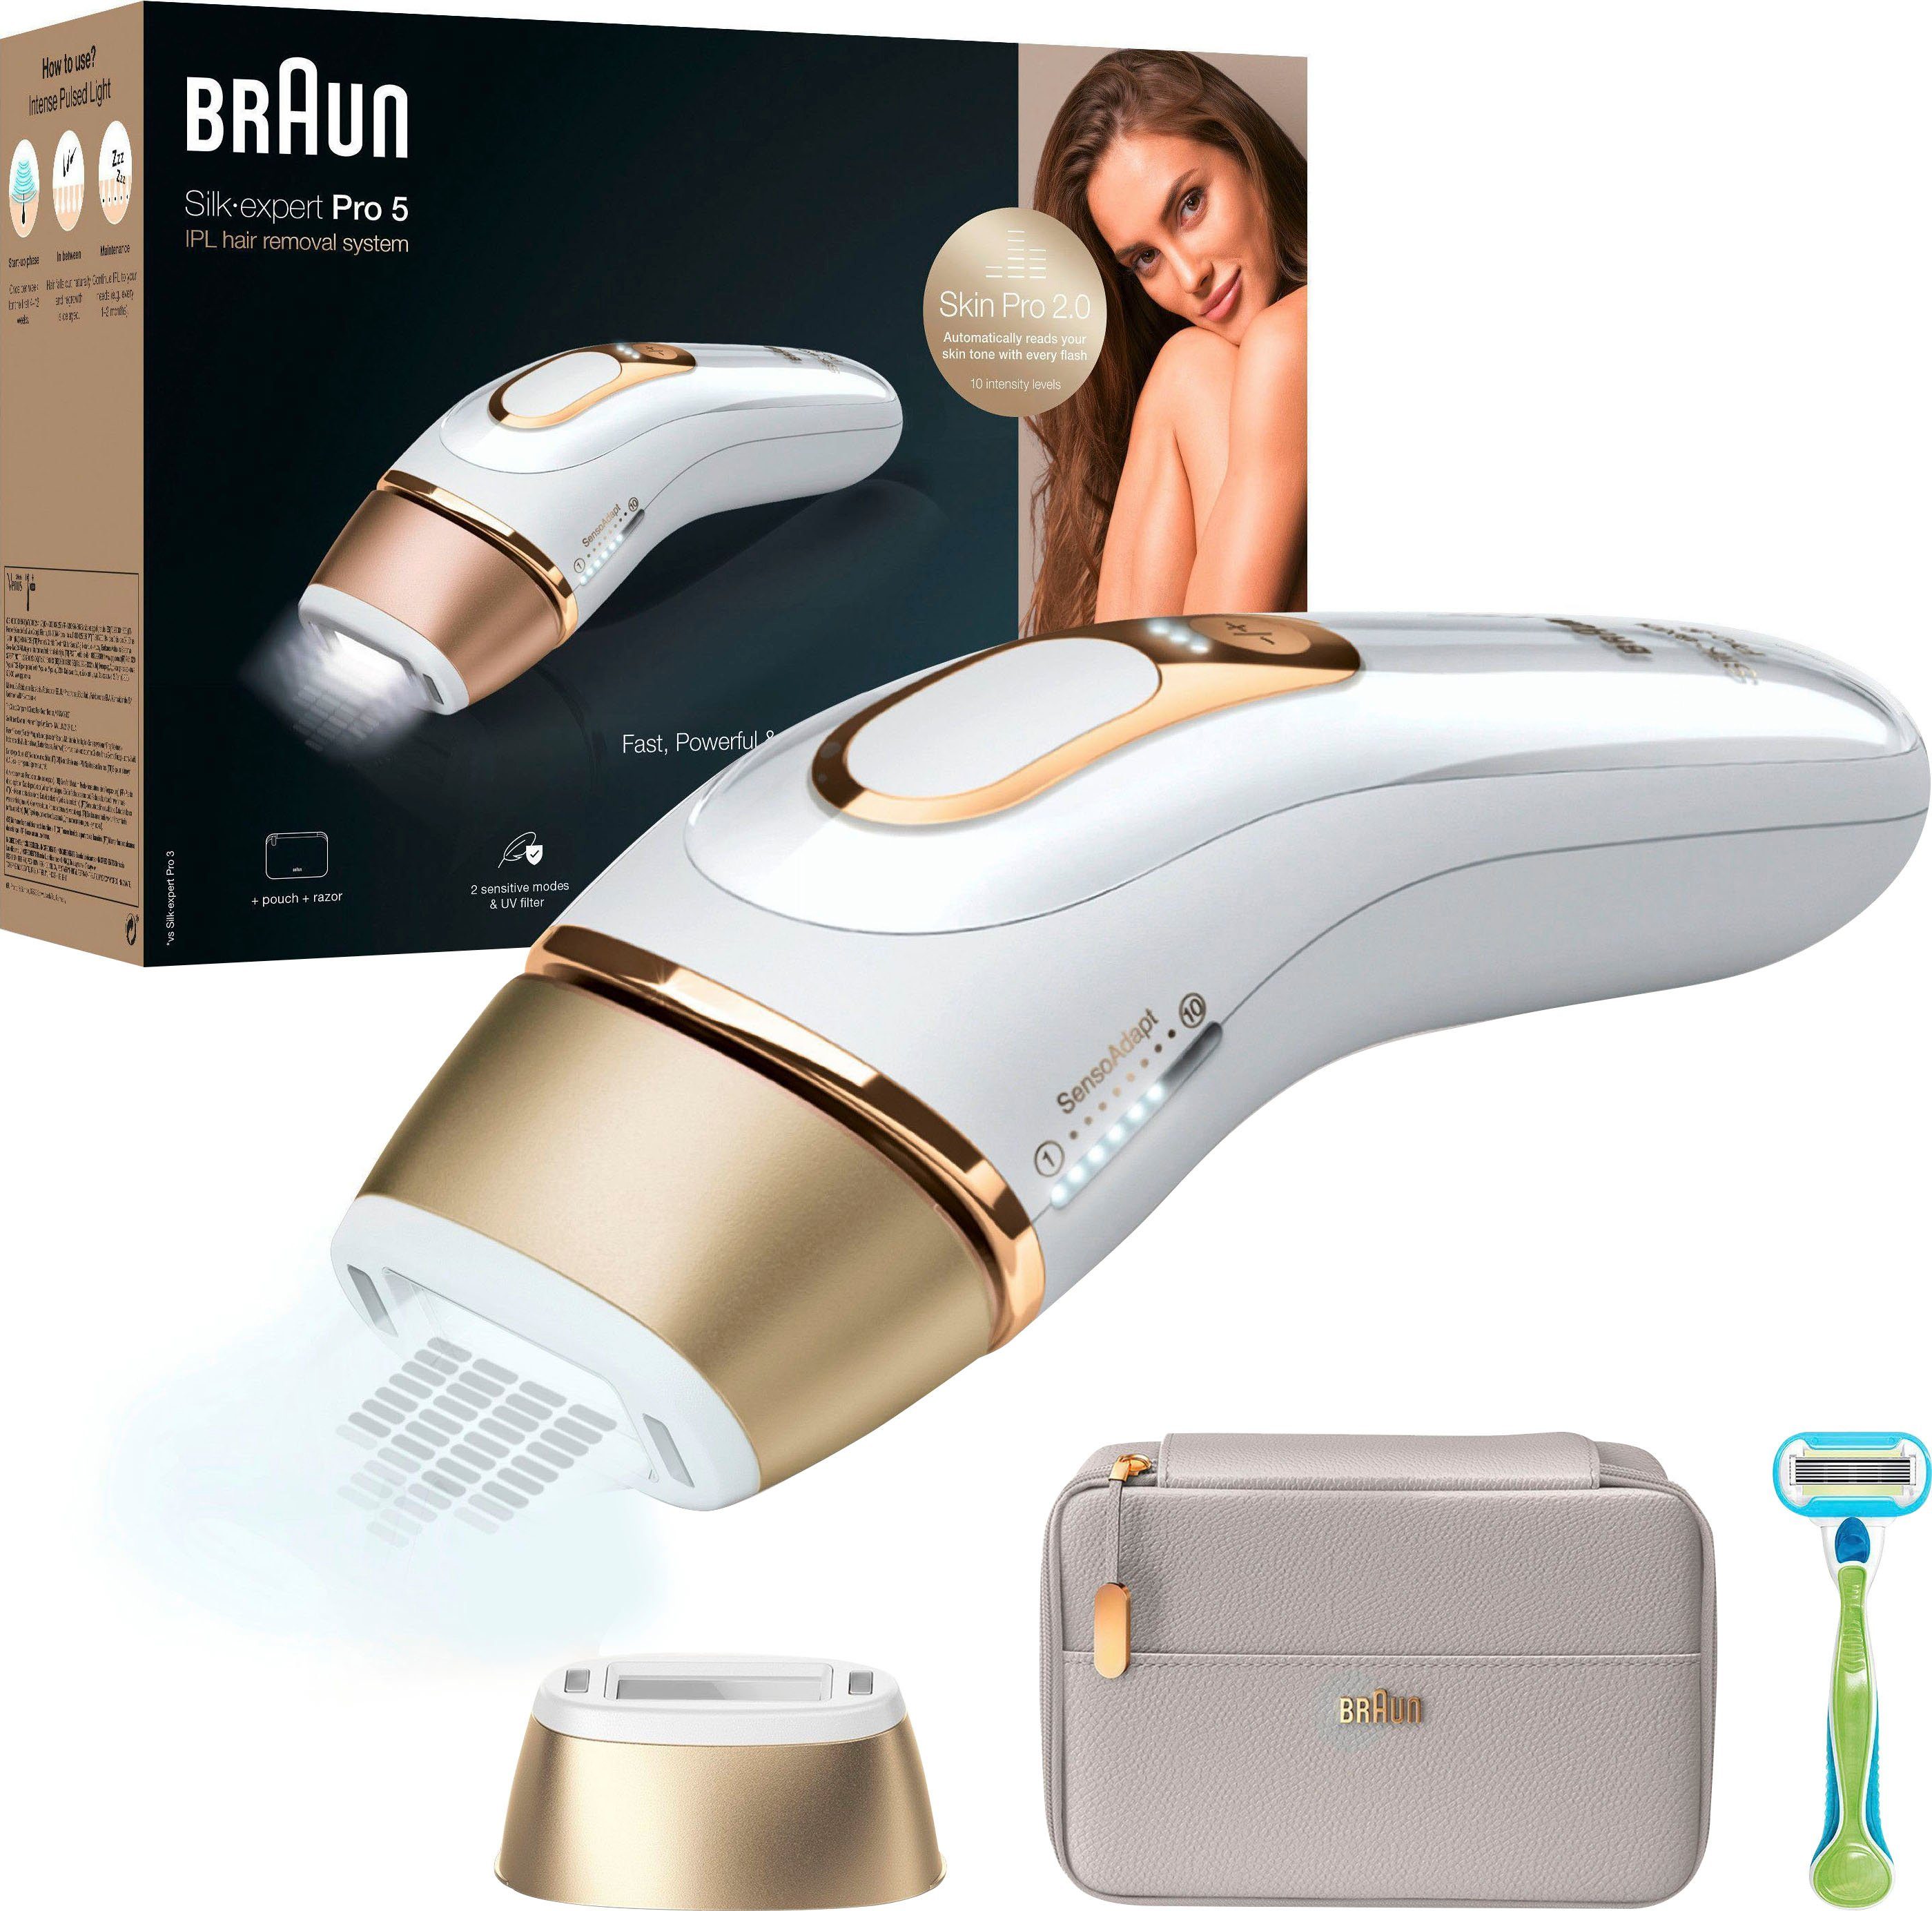 Silk-Expert Braun Skin (es Lichtimpulse, Sensor, Garantie Jahren PL5054, Lichtimpulse, auf die 400.000 Pro 5 Pro Website) Braun 400.000 Mit der IPL-Haarentferner 2.0 gelten AGB 5